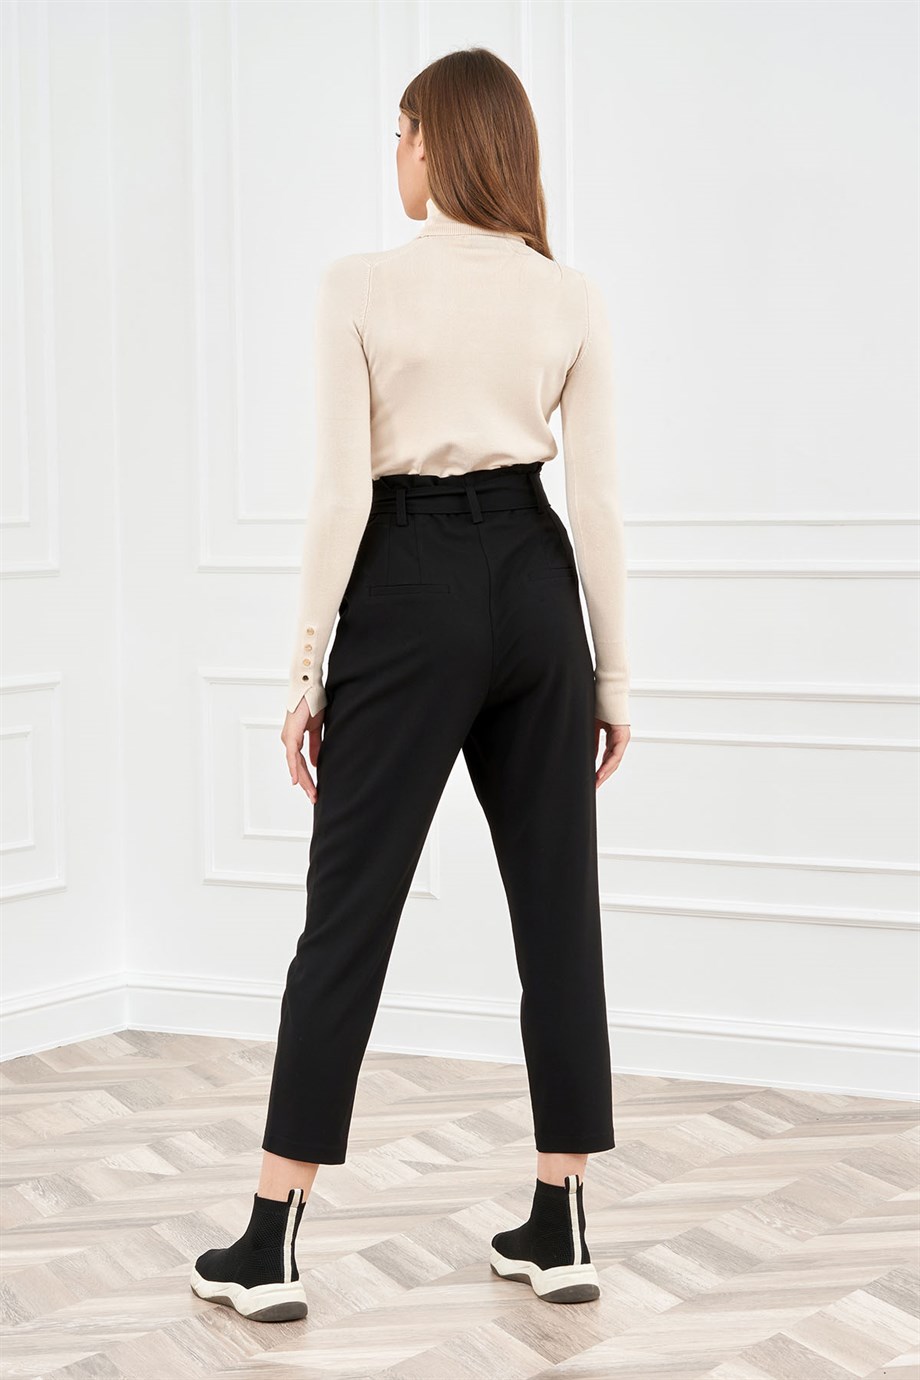 Siyah Yüksek Bel Kumaş Pantolon - Miss Lilium Concept